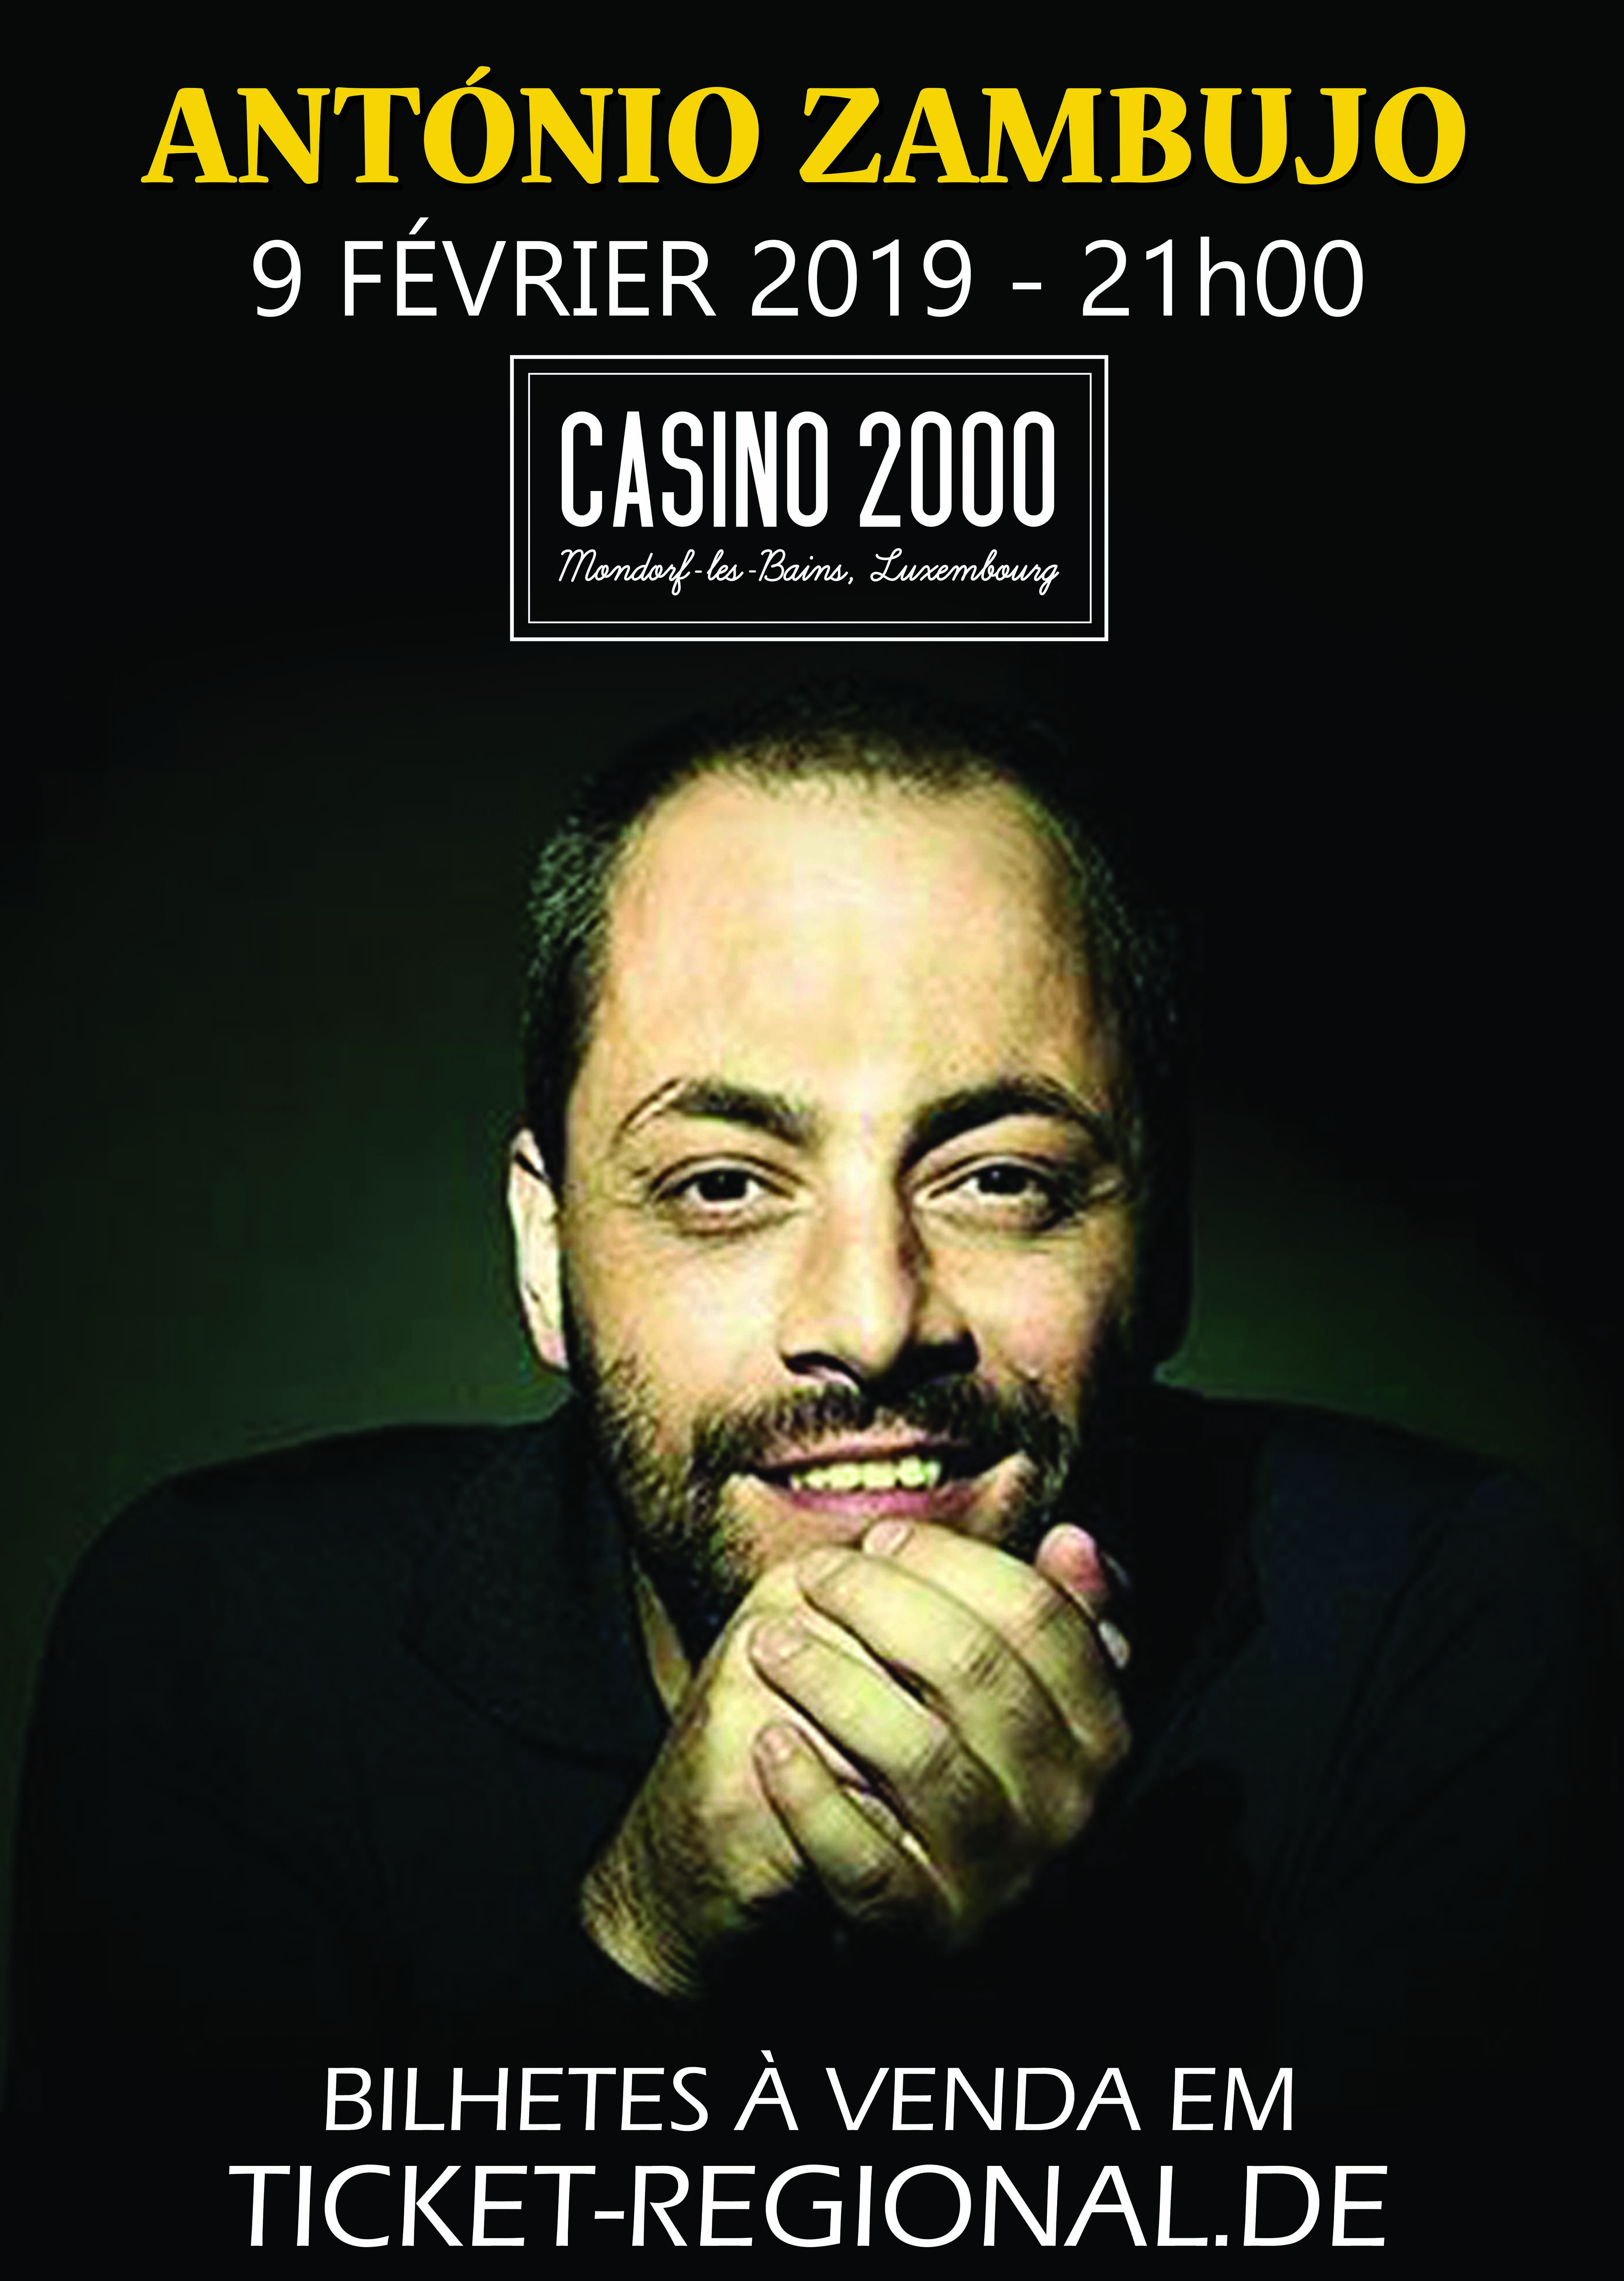 António Zambujo Casino 2000